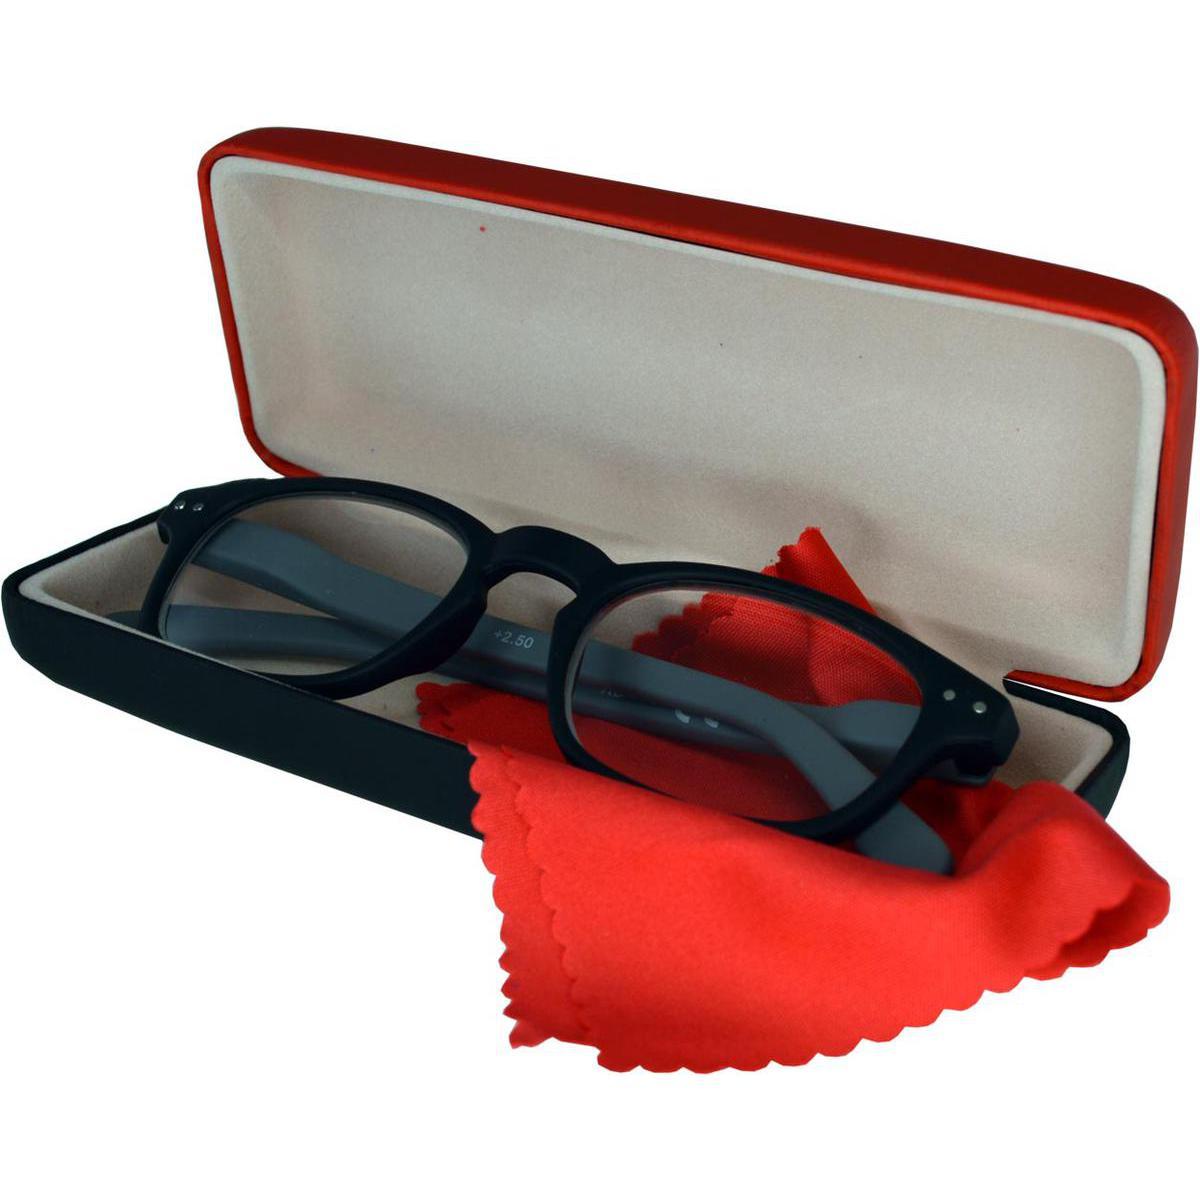 Etui à lunettes - Carton et plastique - 15 x 6 cm - Rouge, bleu, noir ou gris